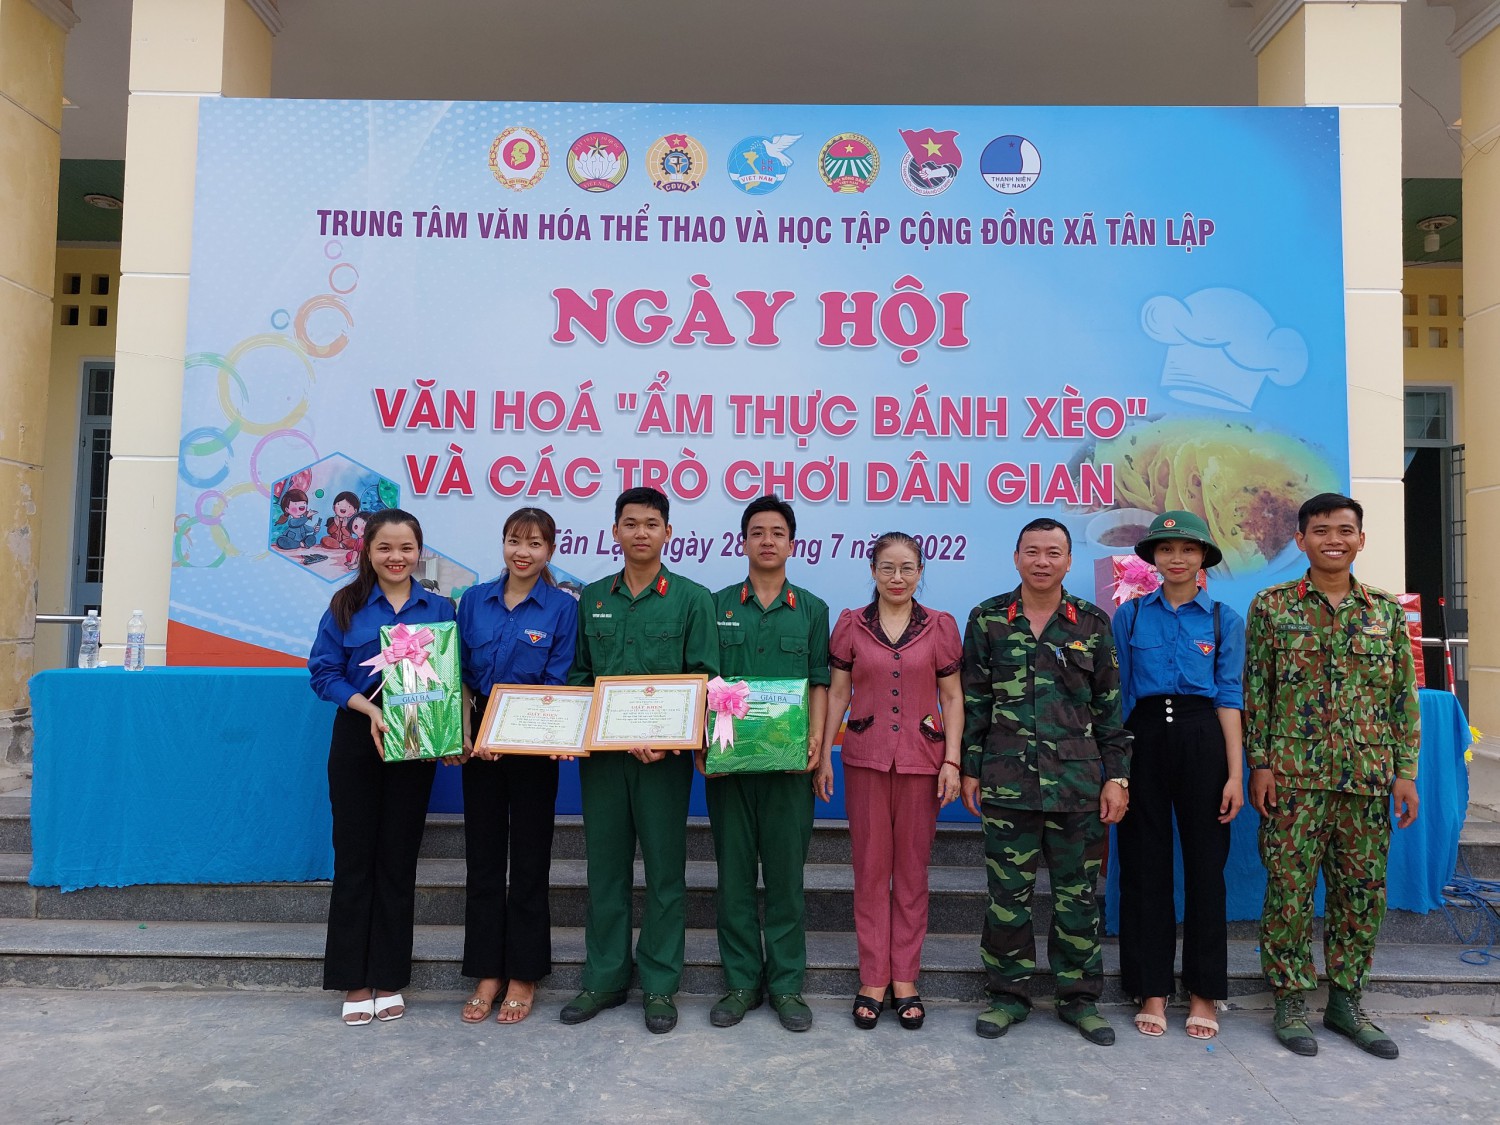 Trung tâm VHTT&HTCĐ xã Tân Lập tổ chức ngày hội văn hóa  “Ẩm Thực Bánh Xèo”và các trò chơi dân gian.